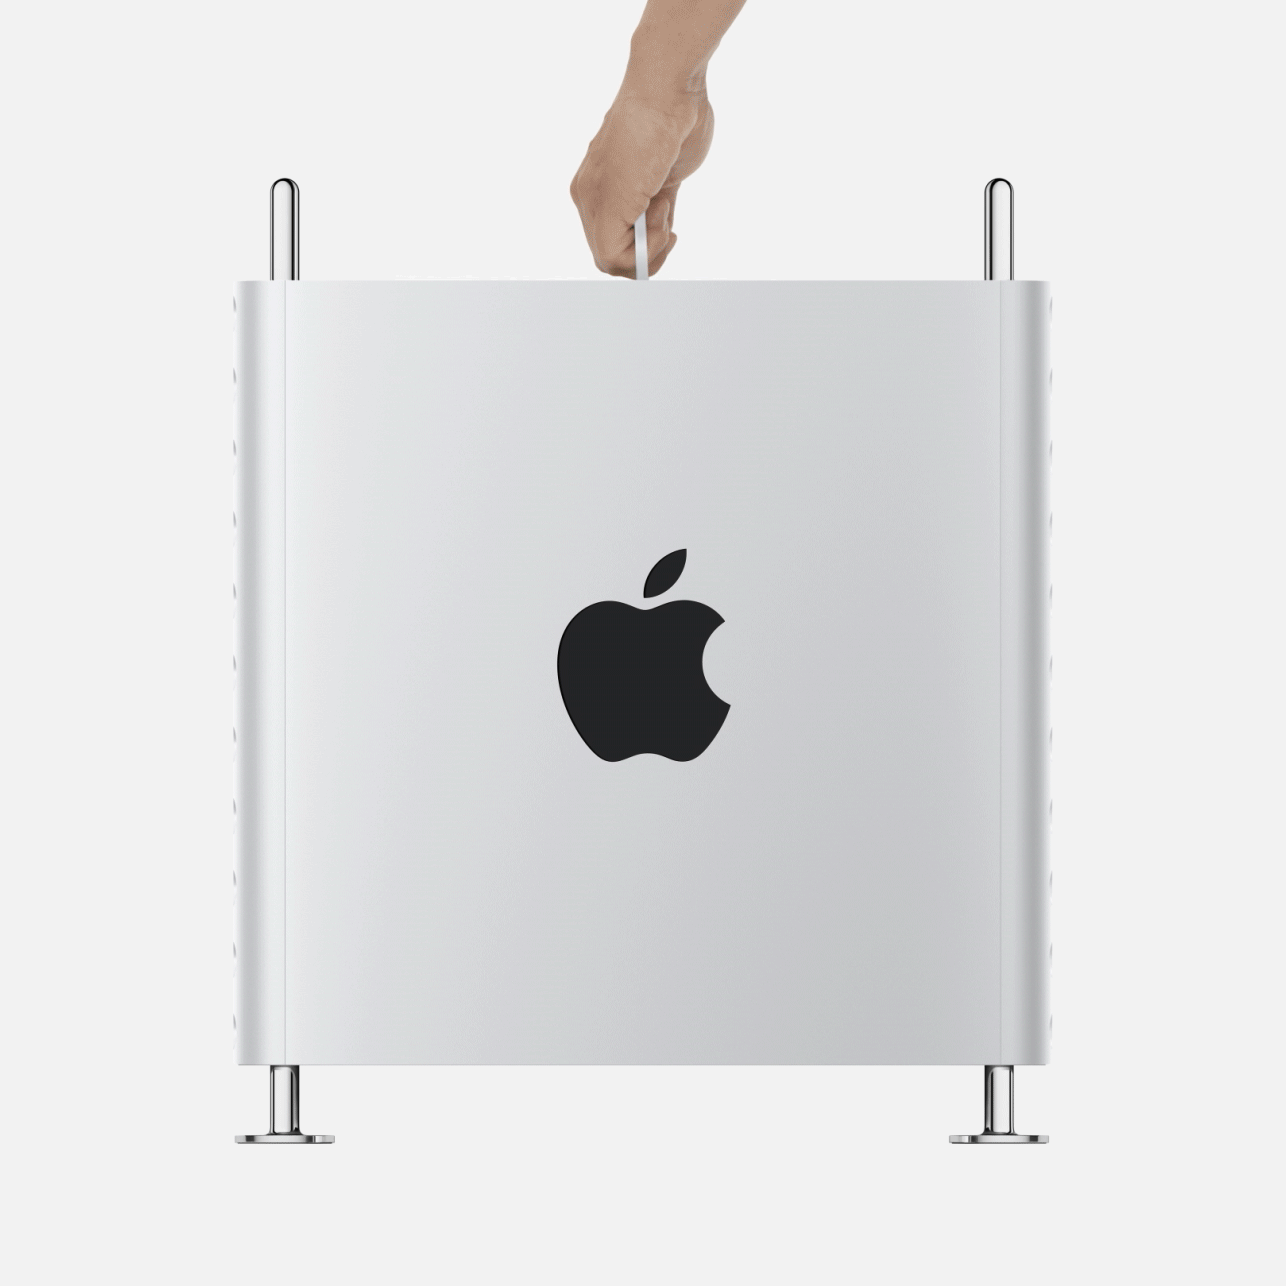 Apple annuncia il nuovo Mac Pro 2019: è potente e modulare